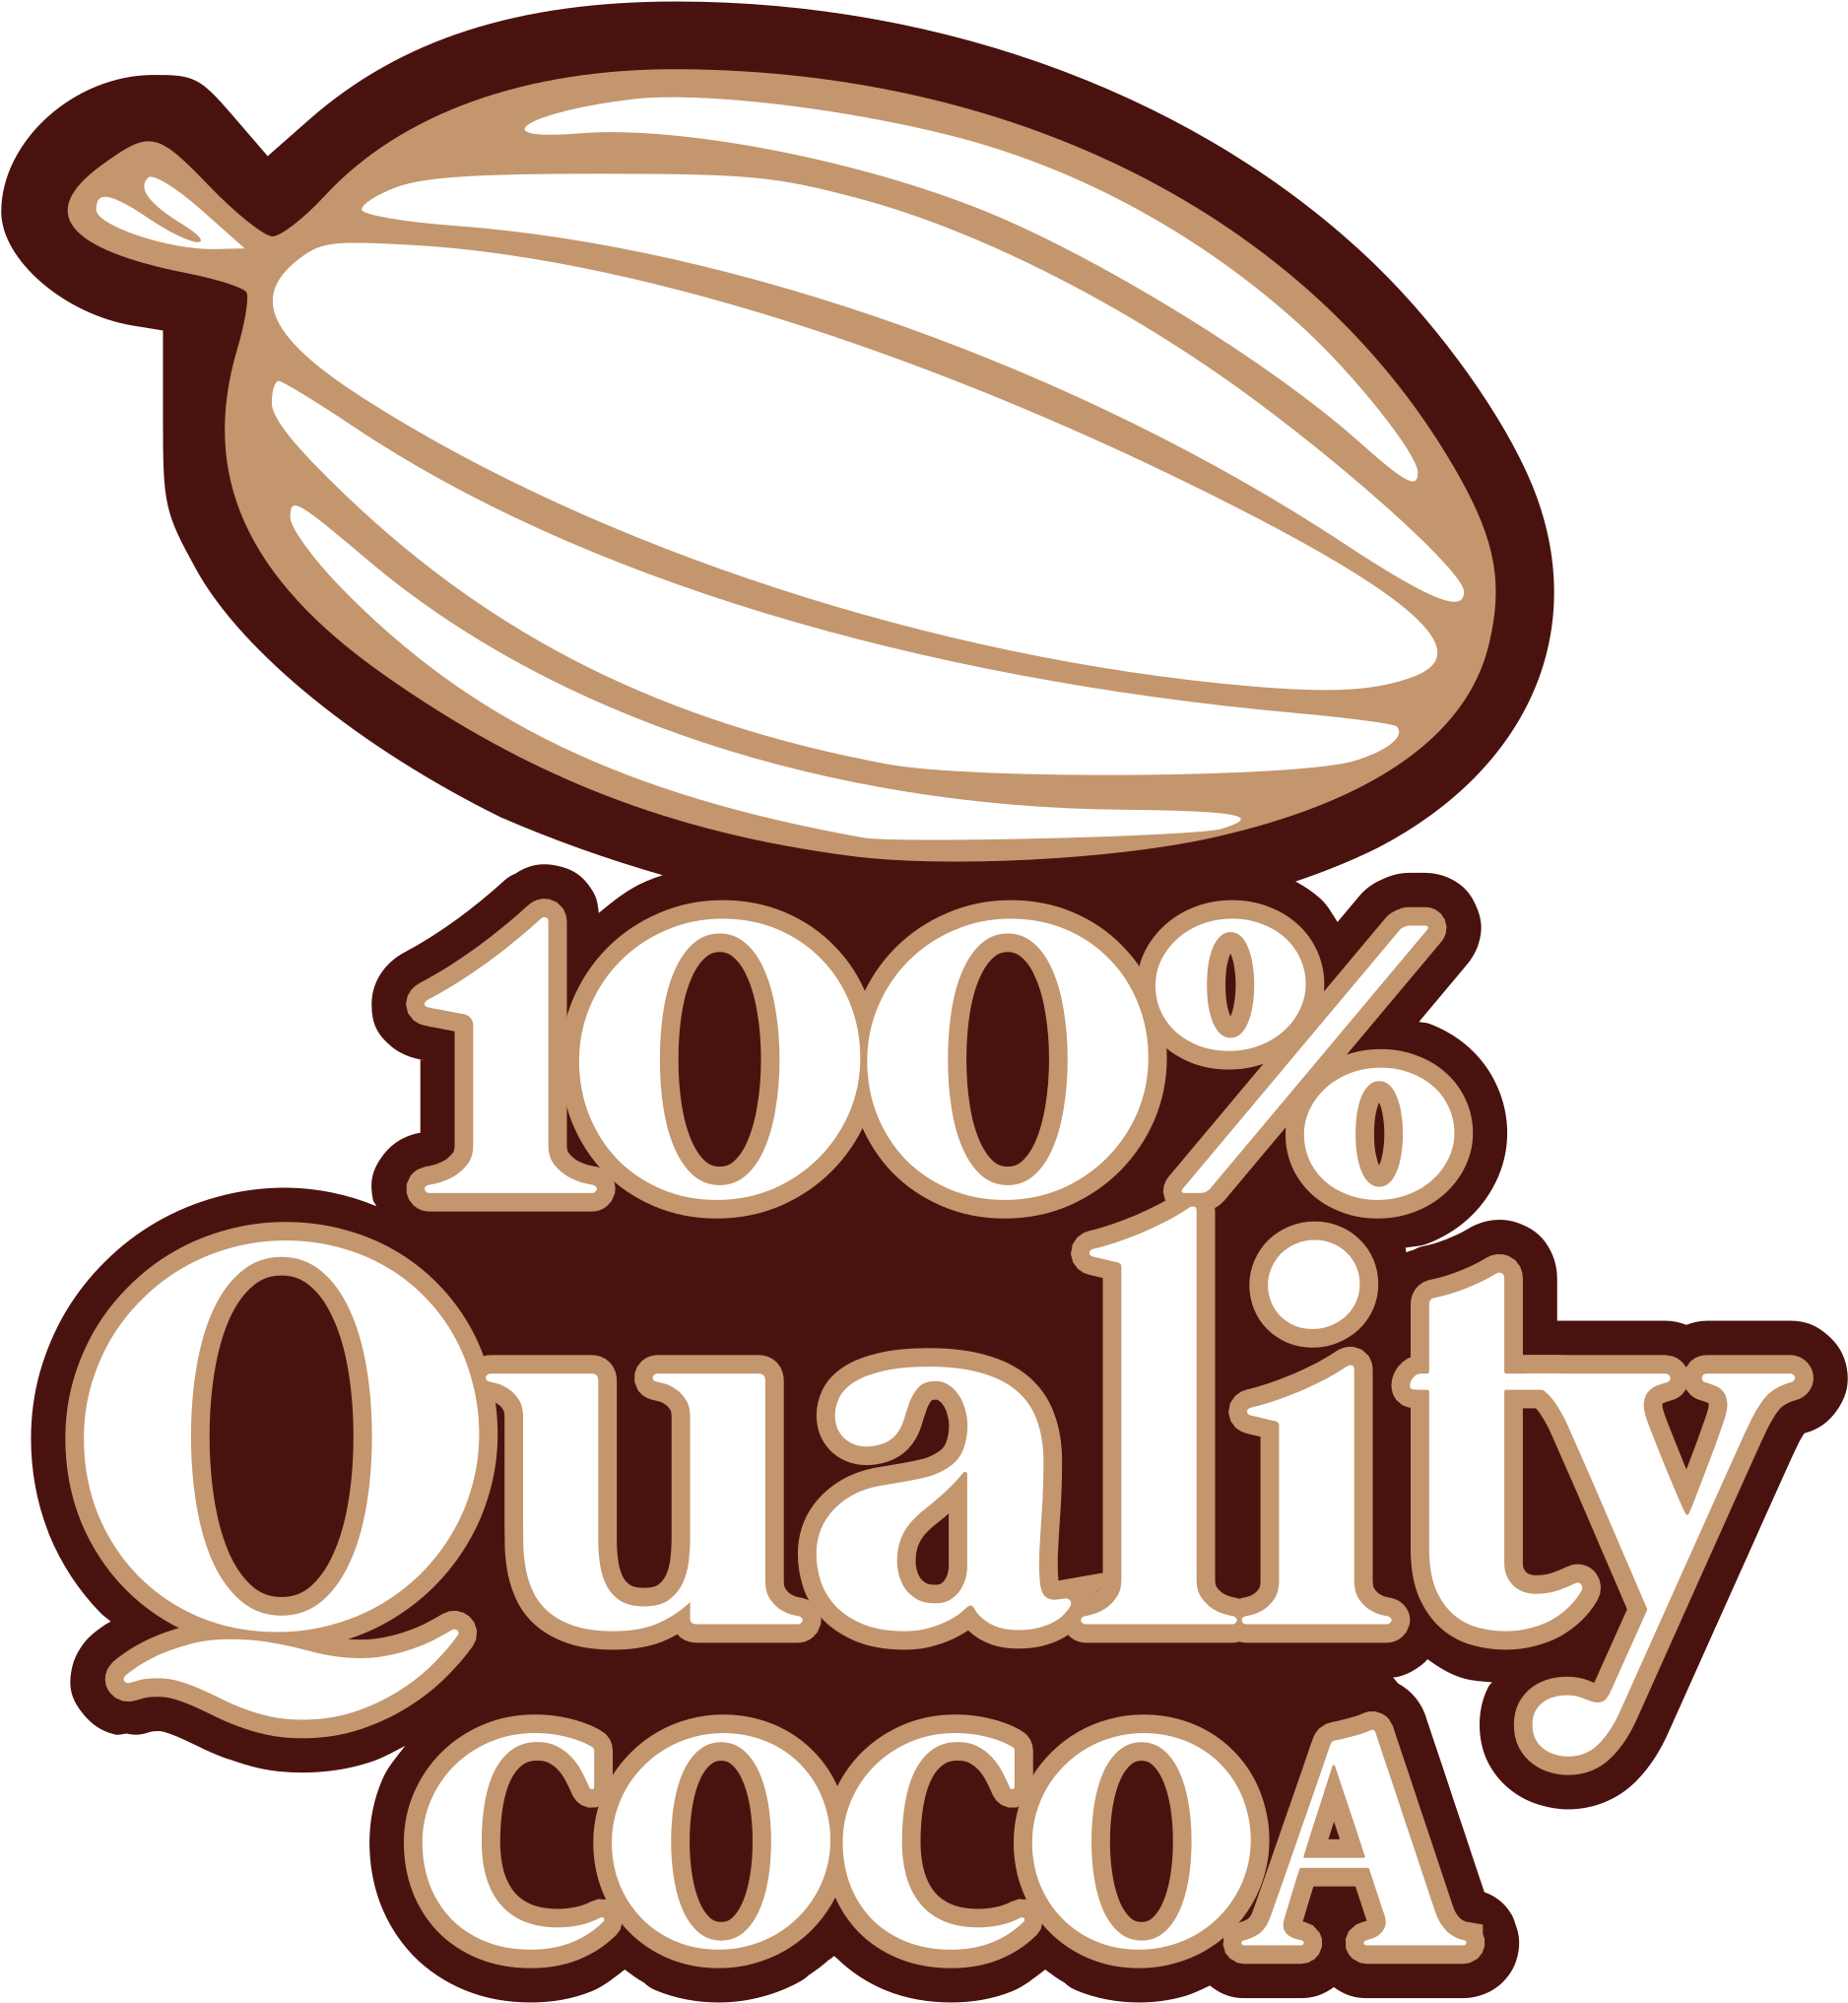 100% Quality Cocoa - Qualitäts-kakao 100% Mousepads (2383x2400)